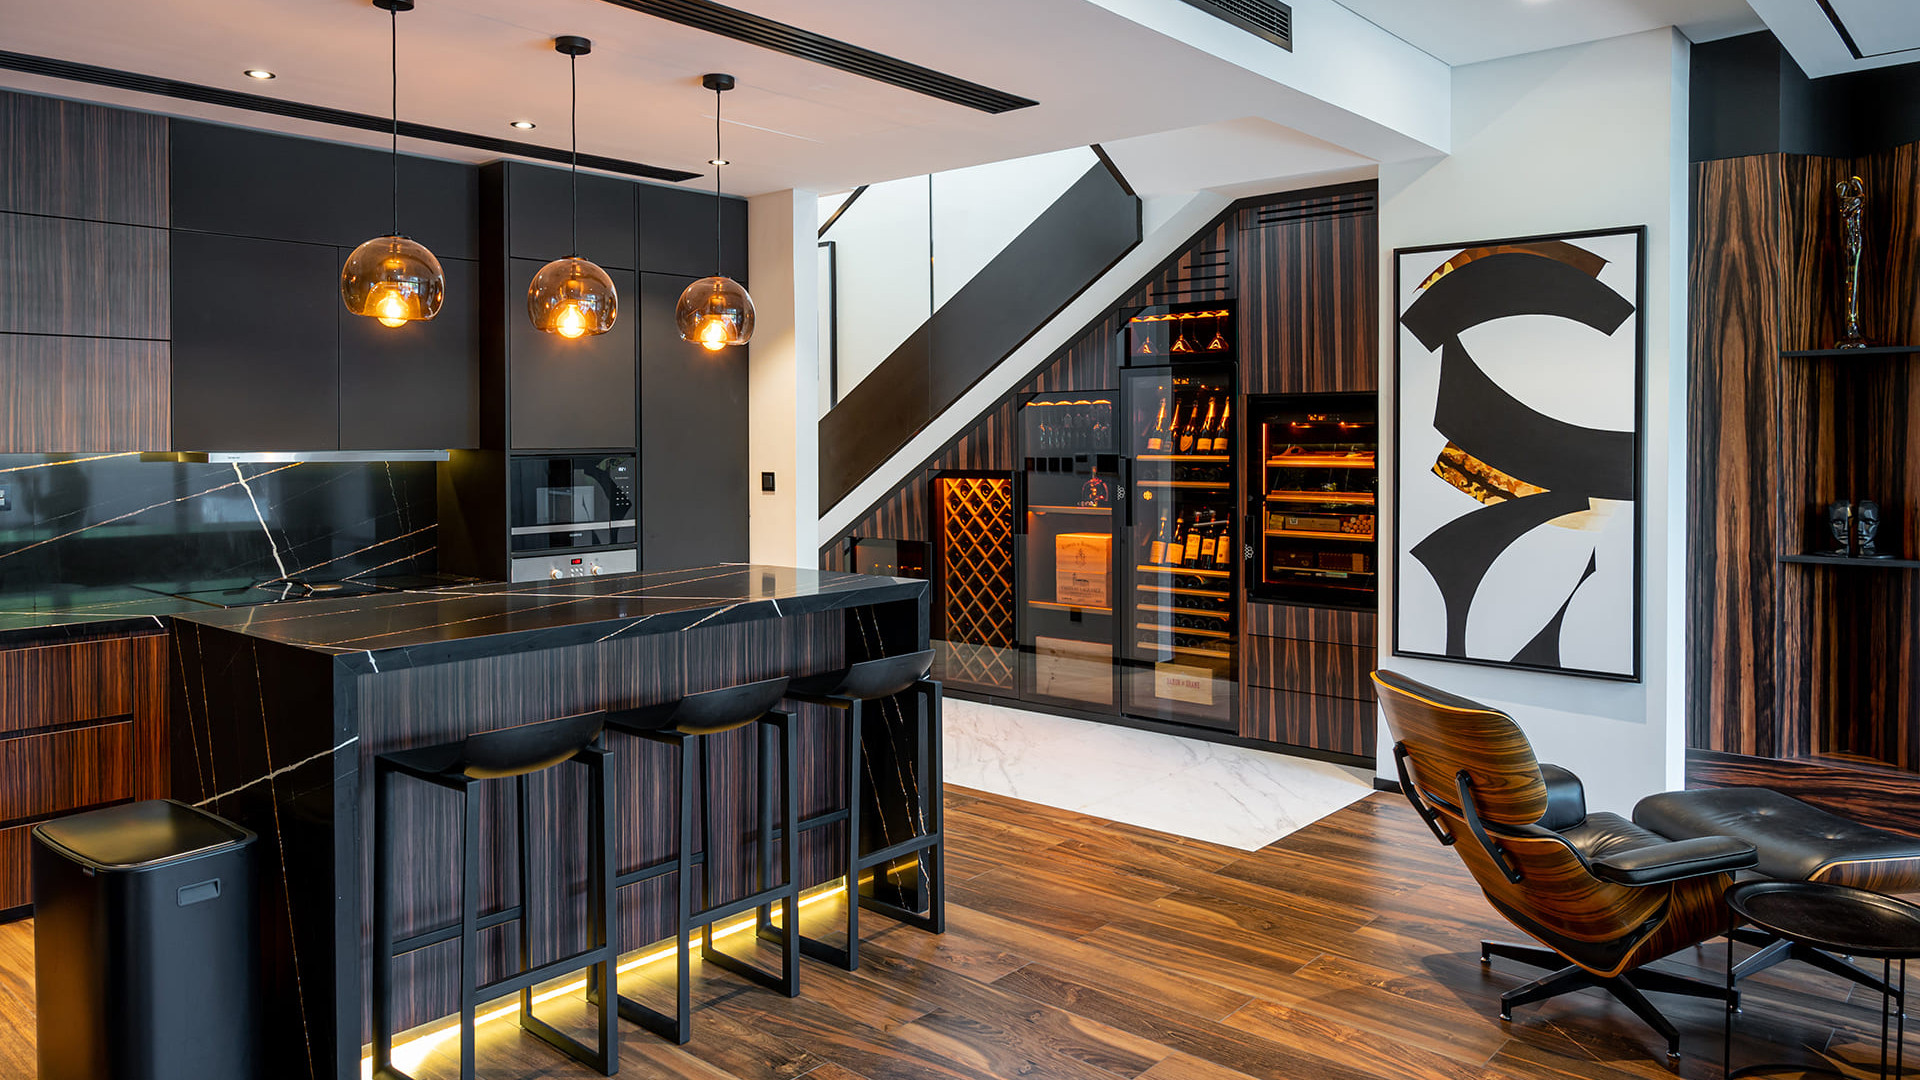 Wein- und Zigarren-Heimstation – Wandschrank unter der Treppe in einer Architektenwohnung mit hochwertiger Innenausstattung.